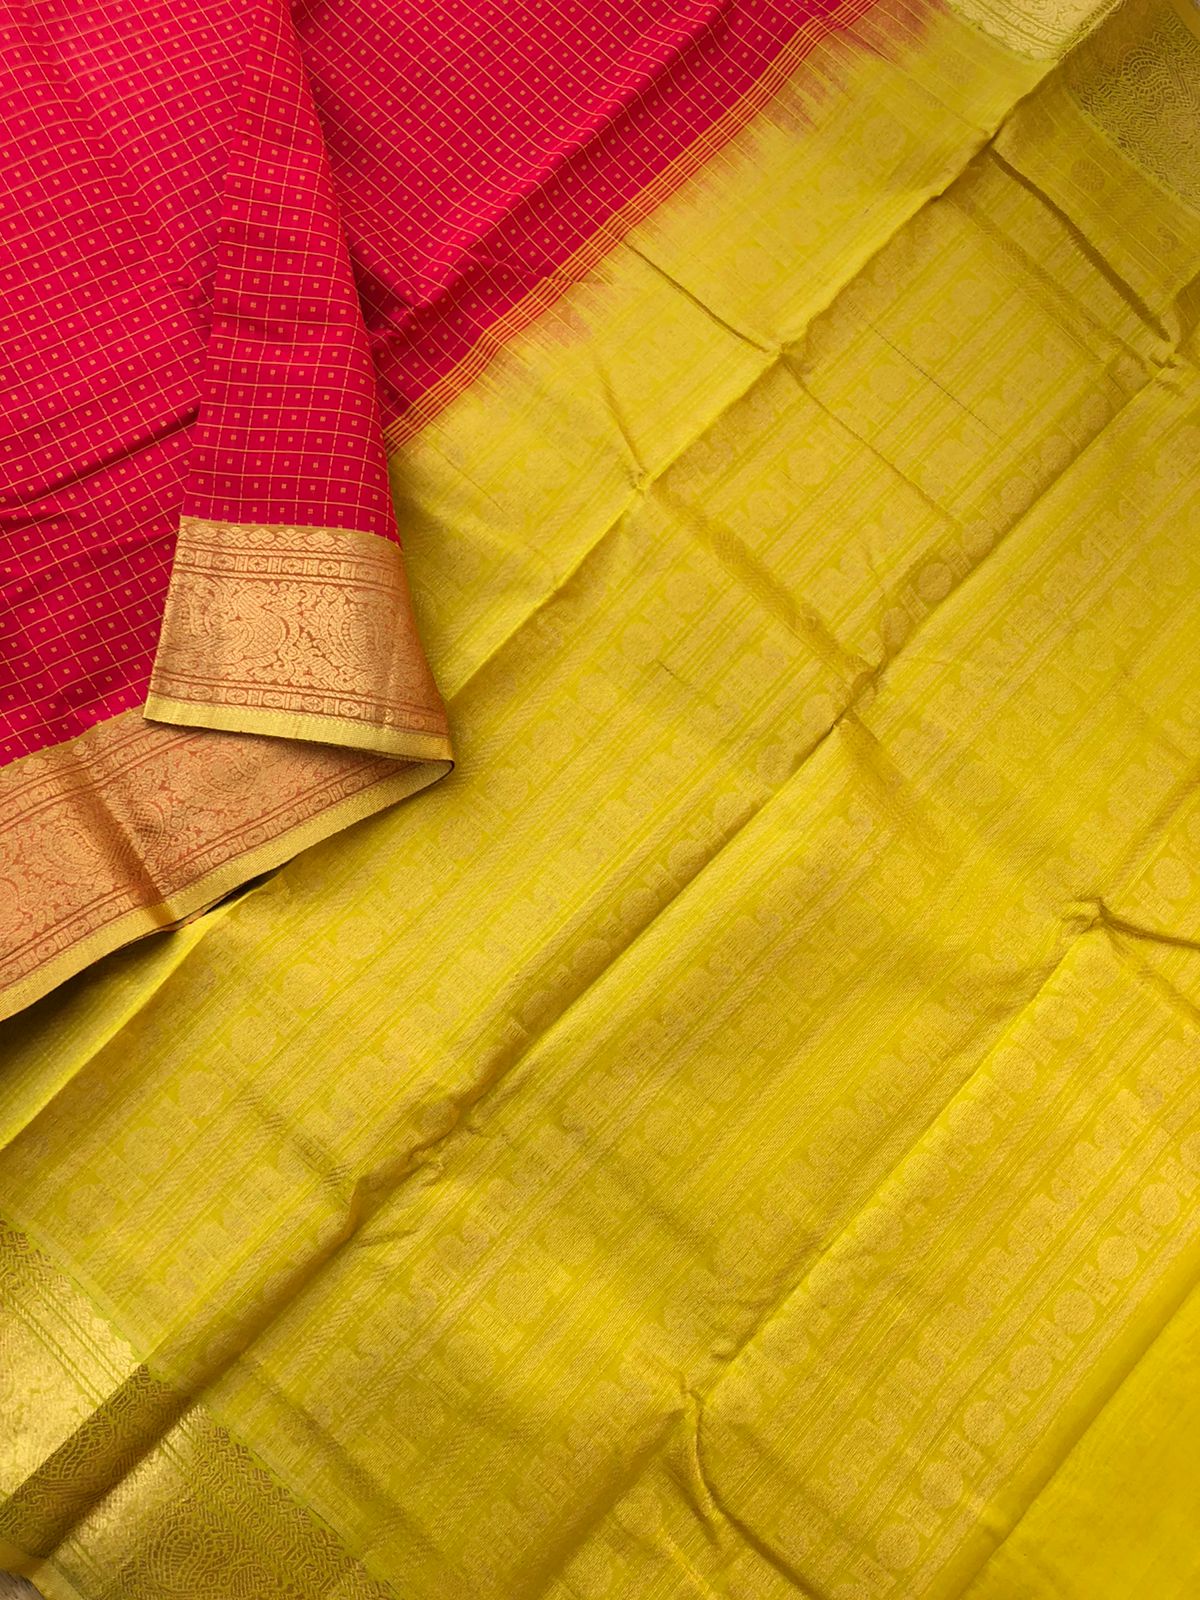 Woven Motifs Silk Cotton - red and sampanga Lakshadeepam